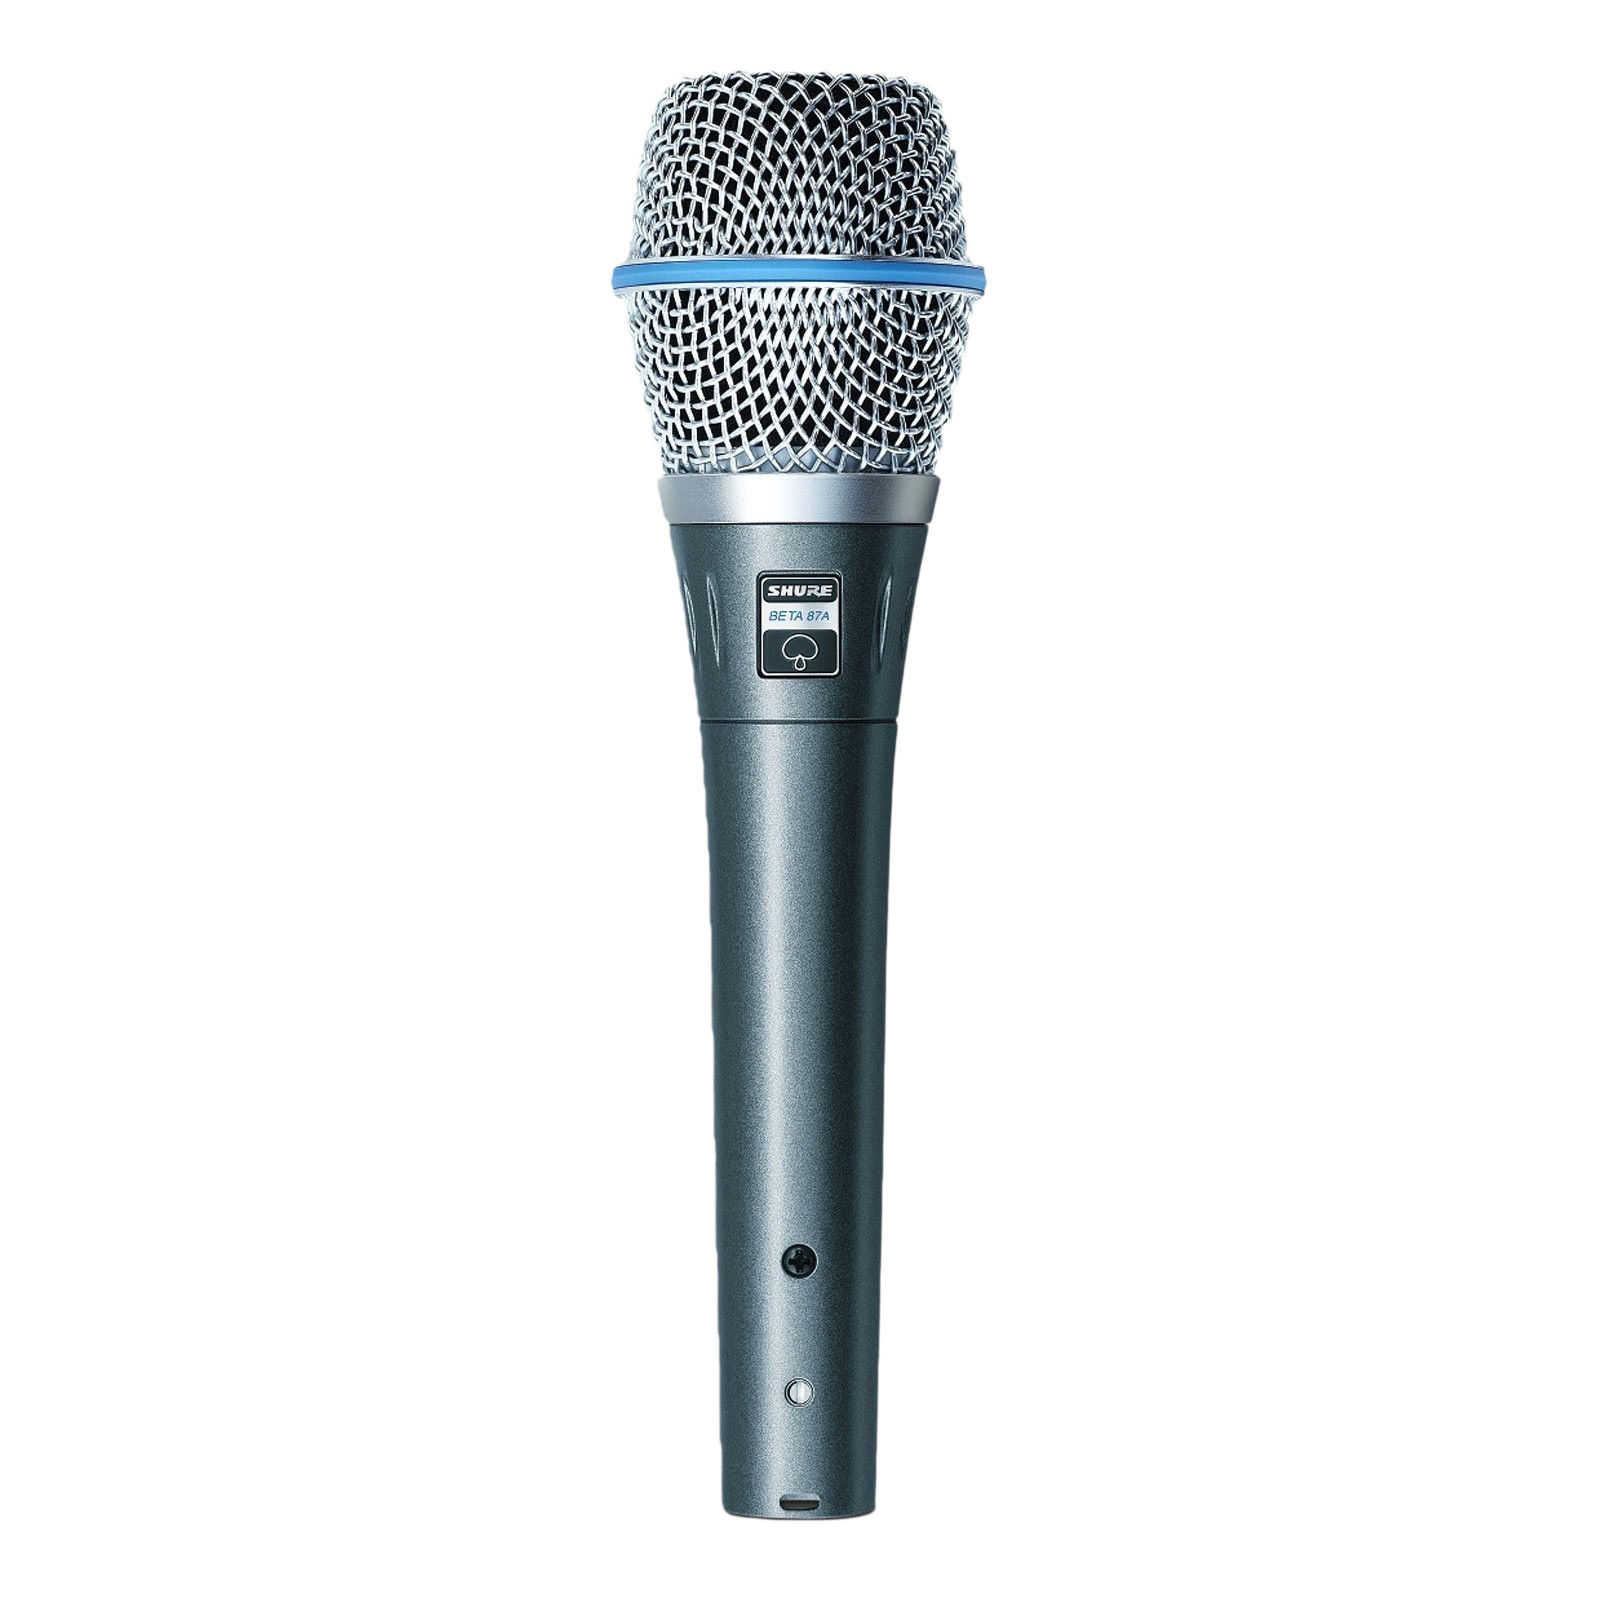 Shure Beta 87a - Microphone - Aluminum Blue Metallic | eBay